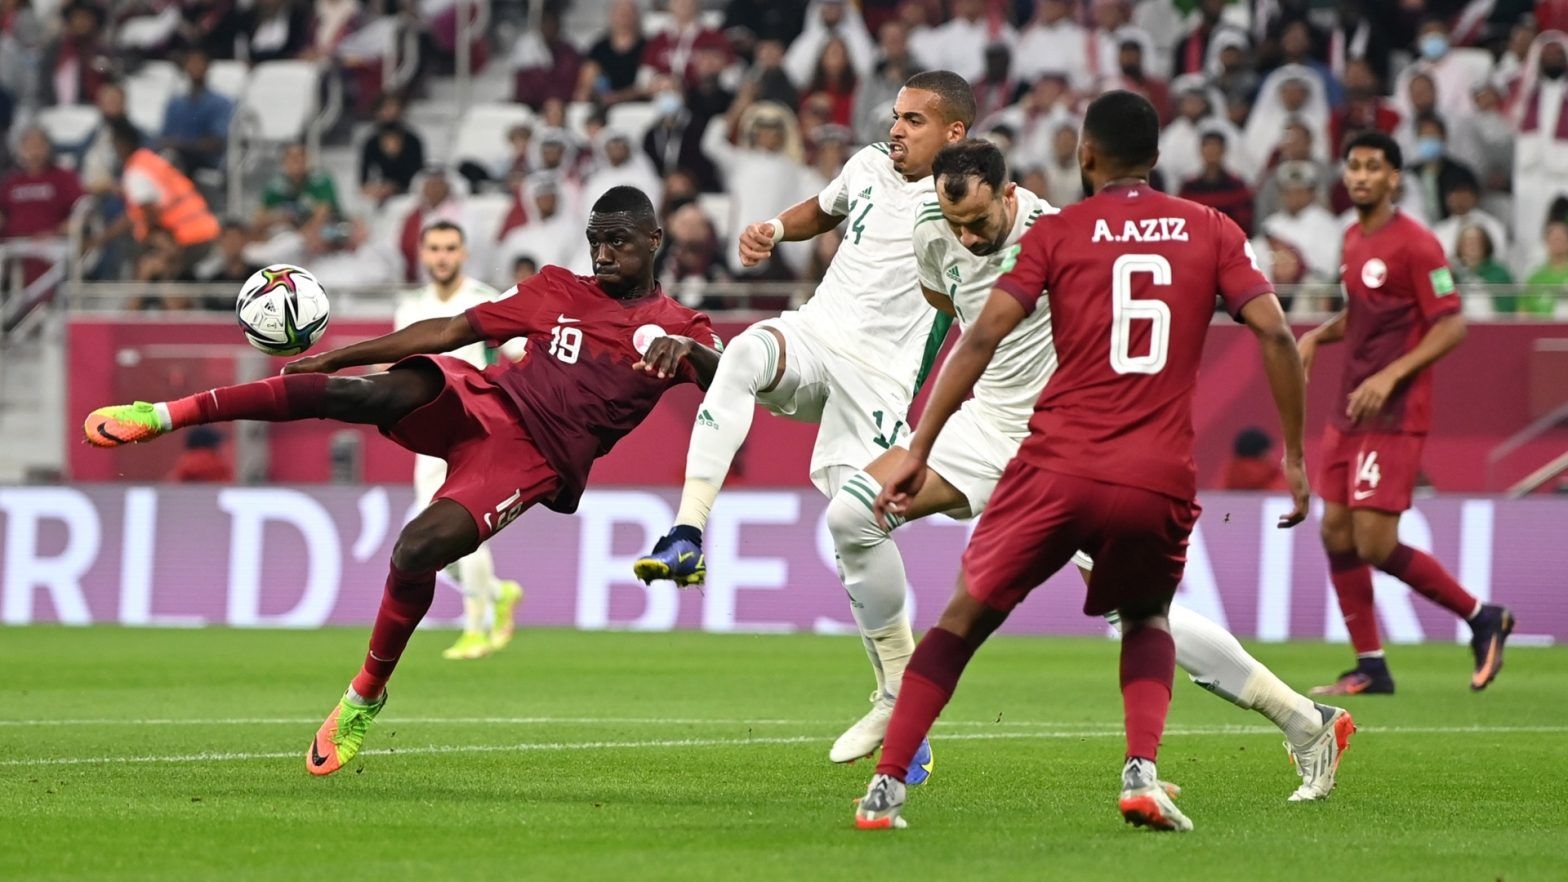 Cầu thủ được dự đoán là vua phá lưới của 2 đội Kuwait vs Qatar